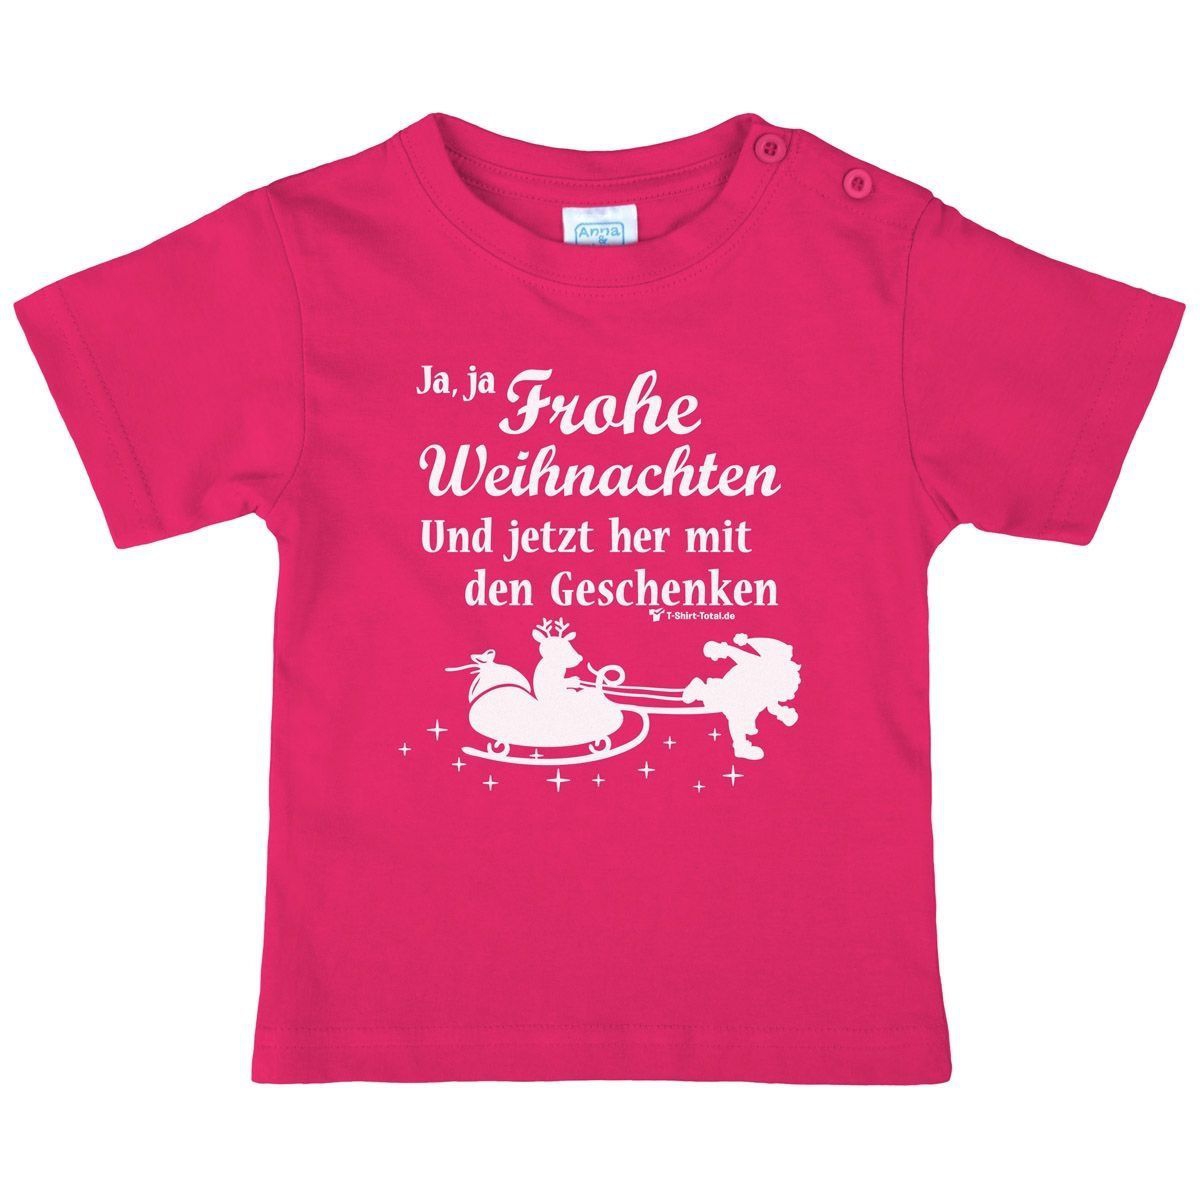 Ja ja Frohe Weihnachten Kinder T-Shirt pink 98